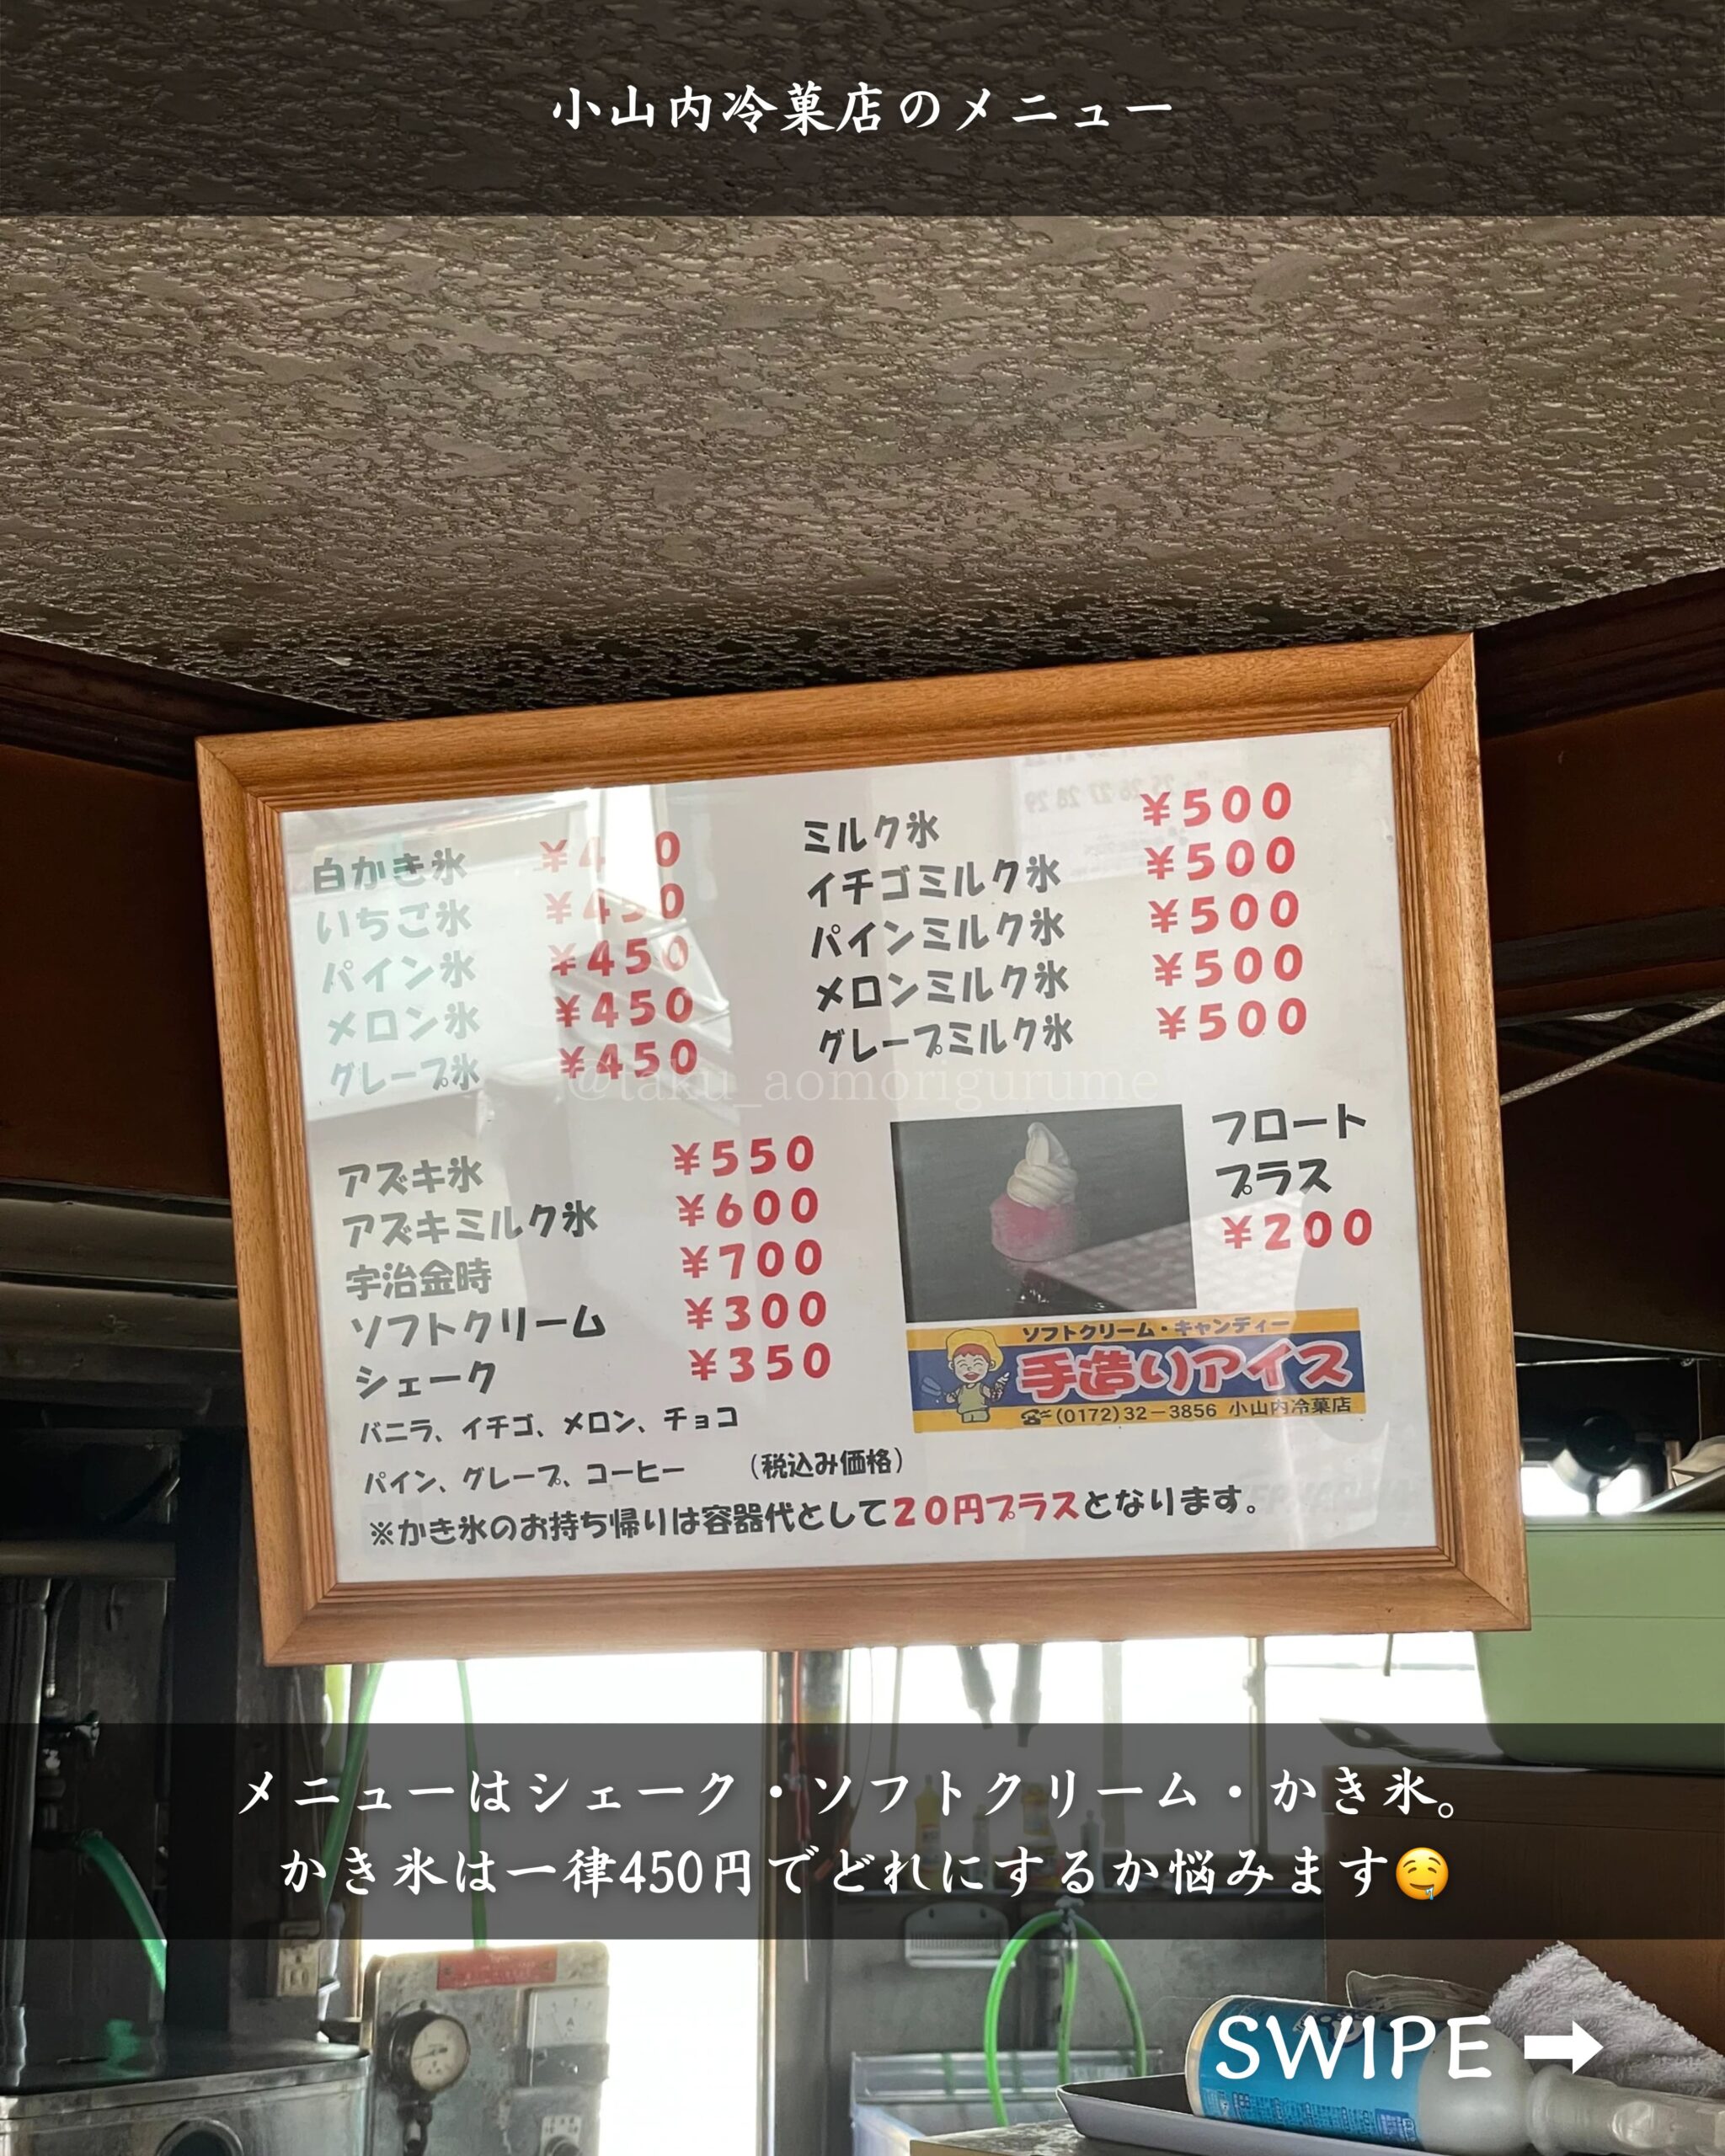 青森県弘前市にある「小山内冷菓店」の「メニュー」